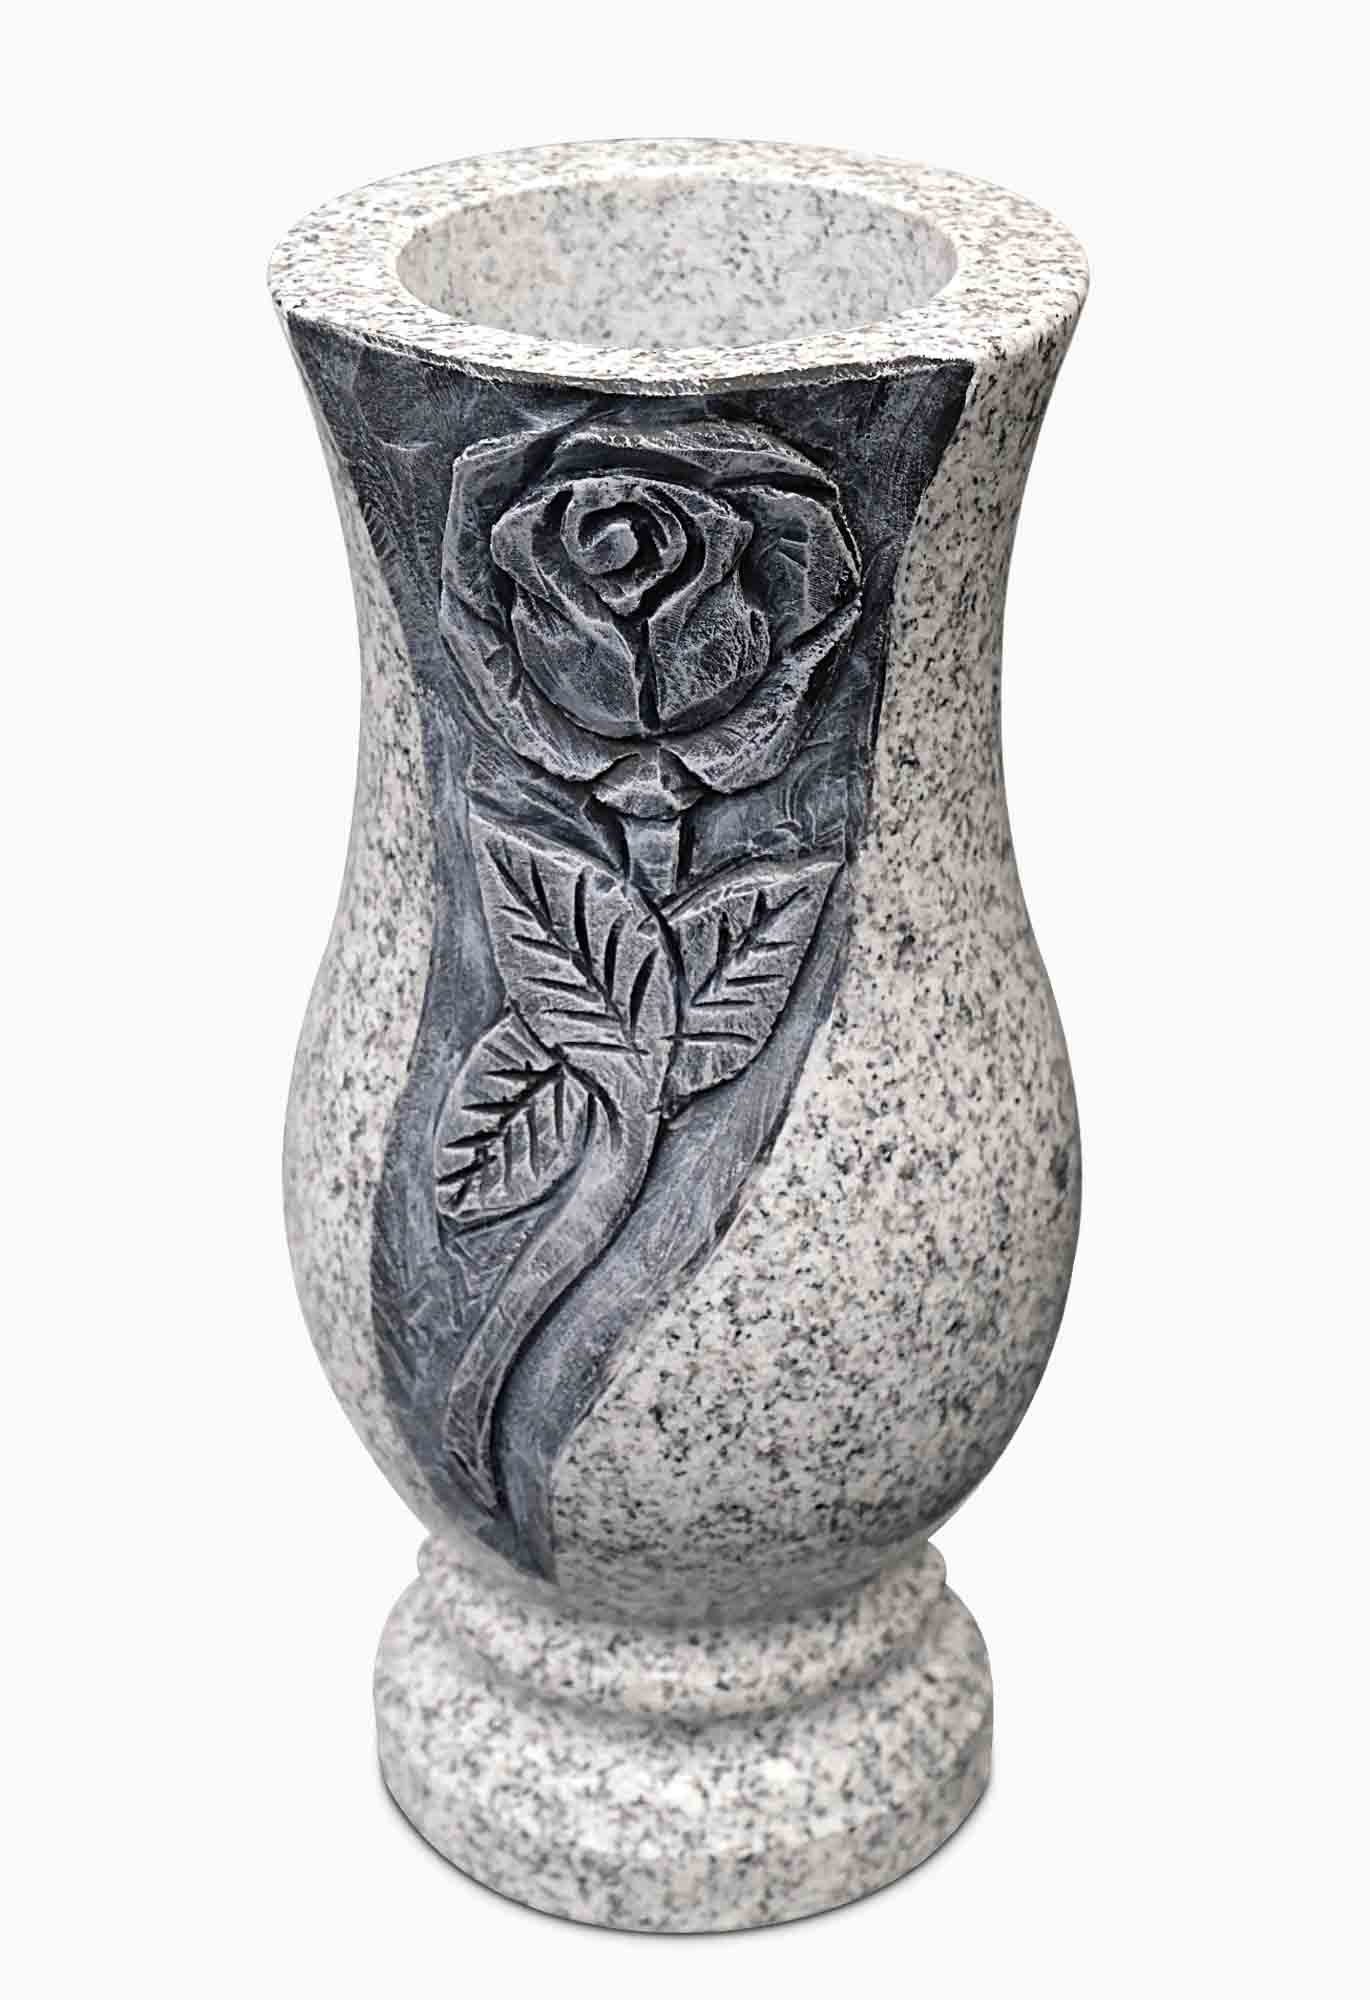 Vase accessories